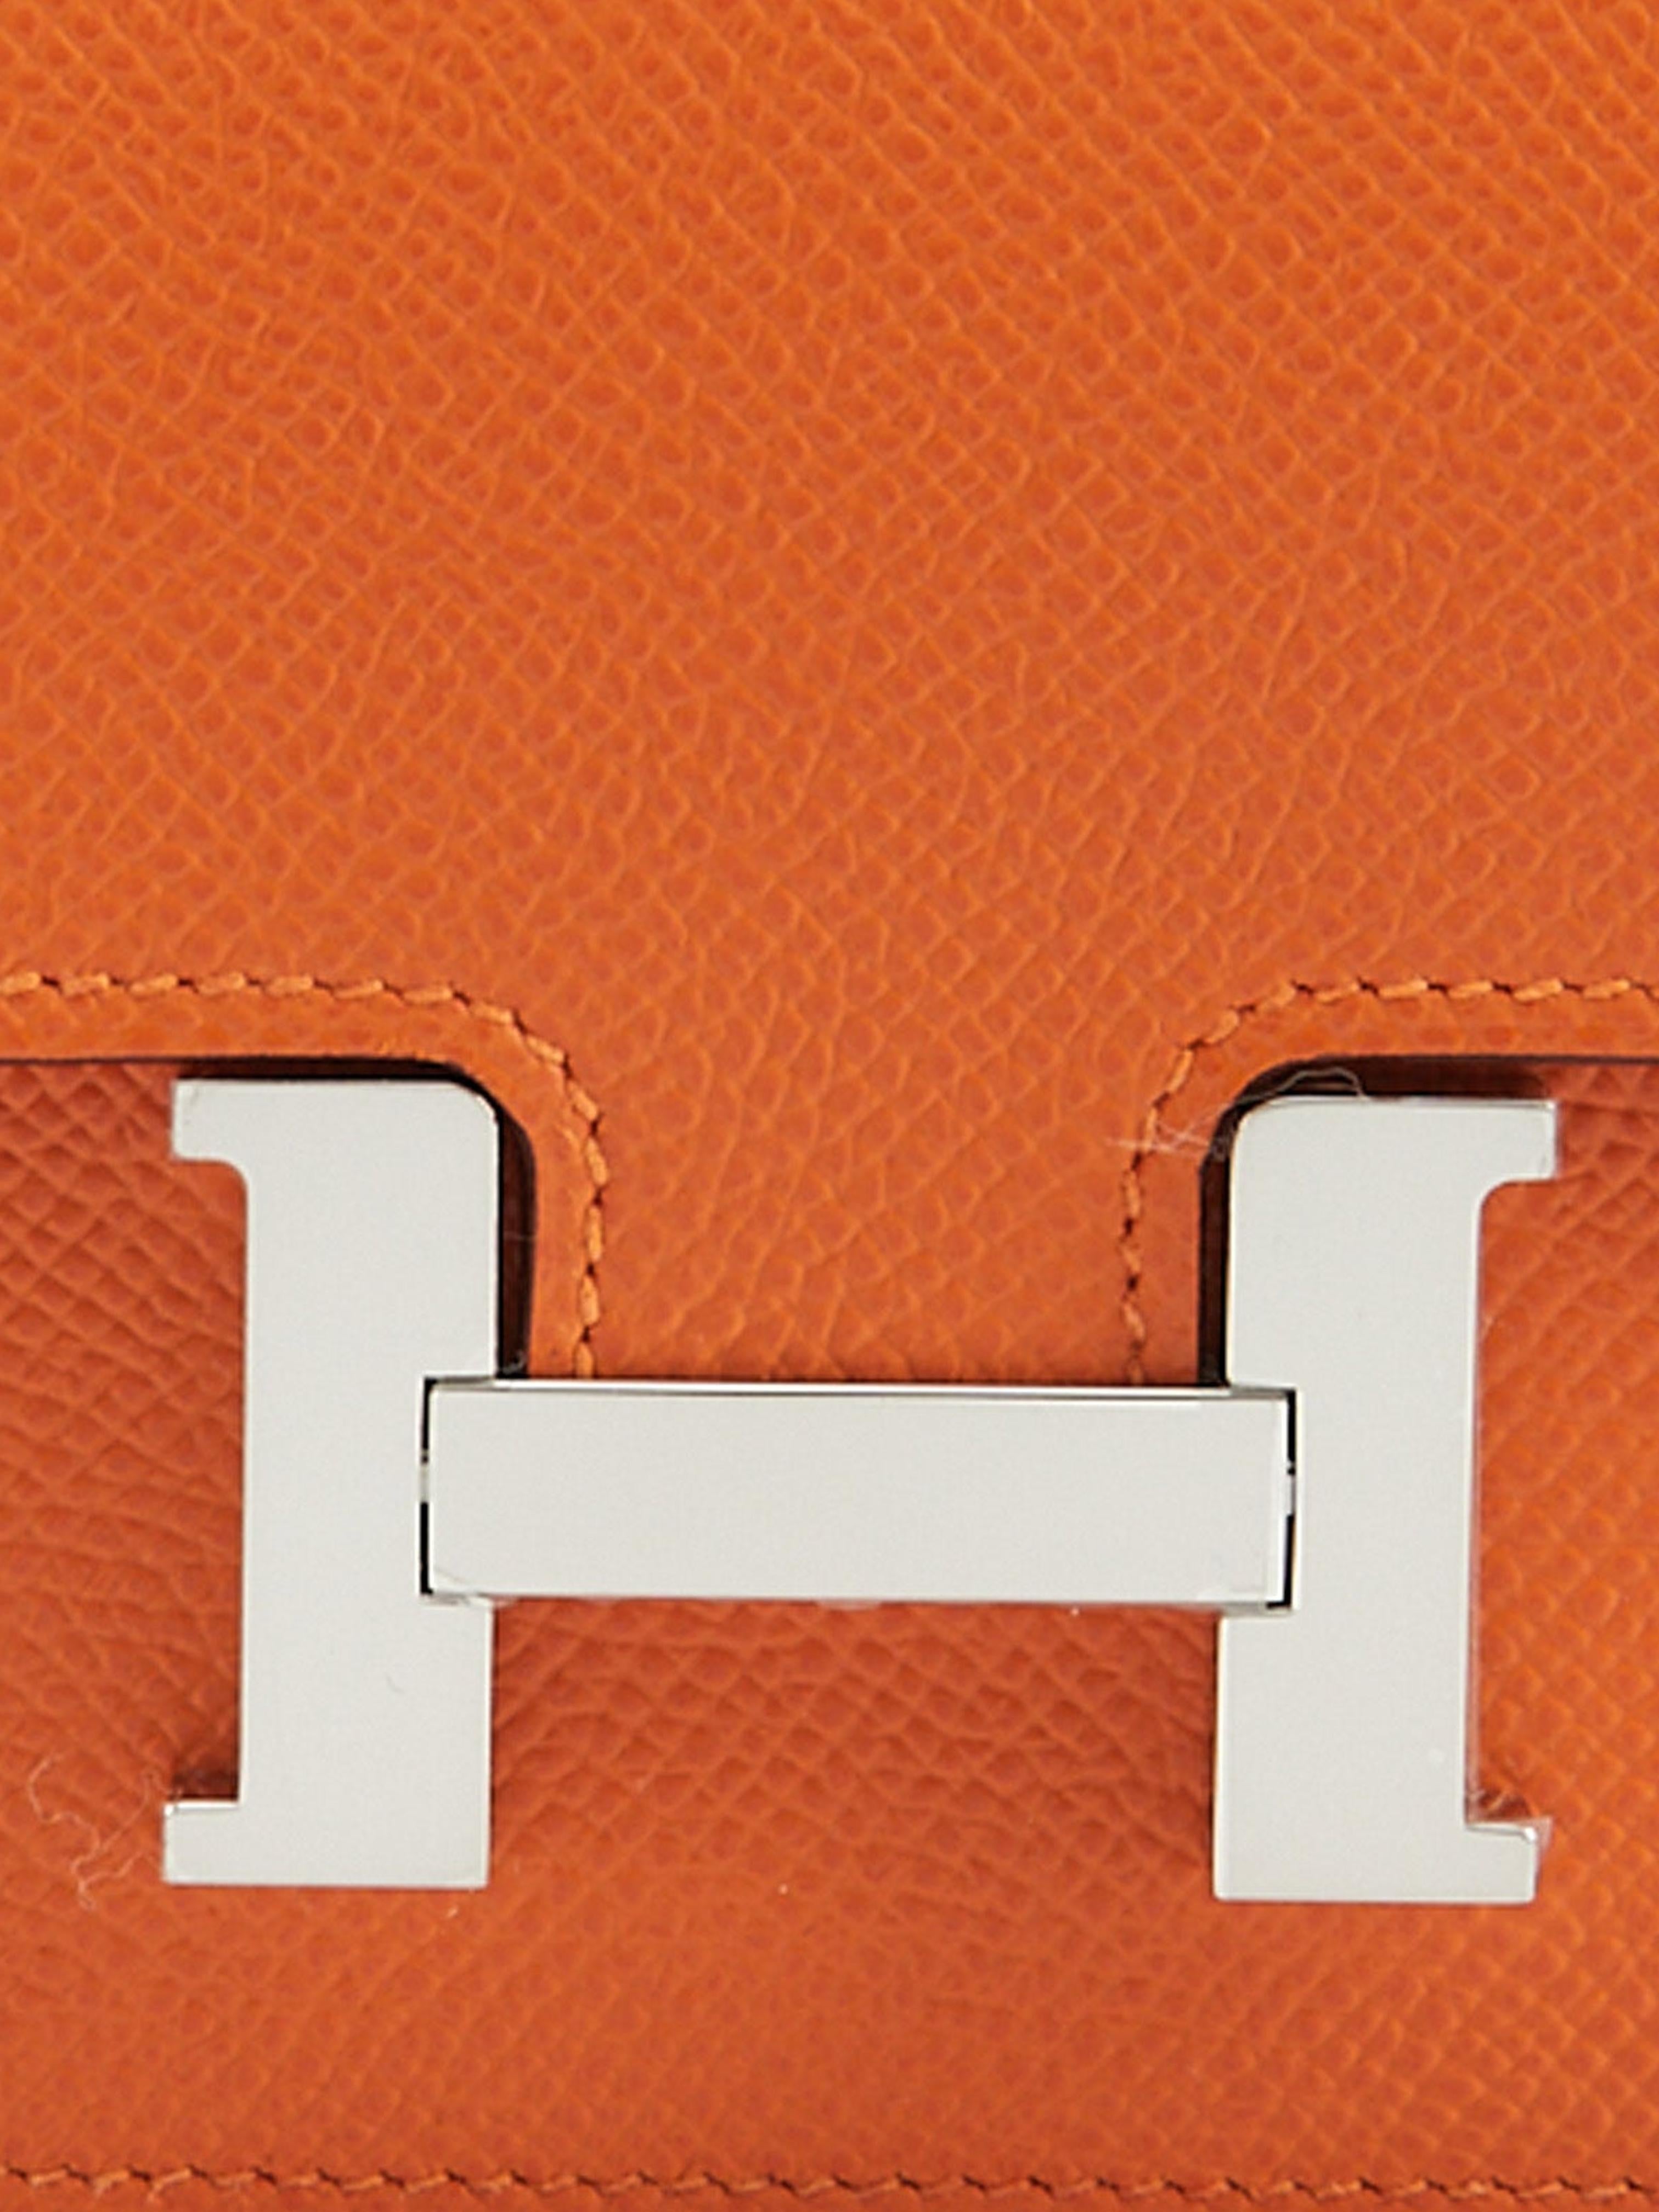 Hermès Constance Brieftasche in Orange

Epsom-Leder mit Palladium-Hardware

Schlankes Portemonnaie mit herausnehmbarem Kleingeldfach mit Reißverschluss, zwei Kreditkartenfächern und Gürtelschlaufe 

Abmessungen: L 12,4 x H 10,2 x T 3 cm